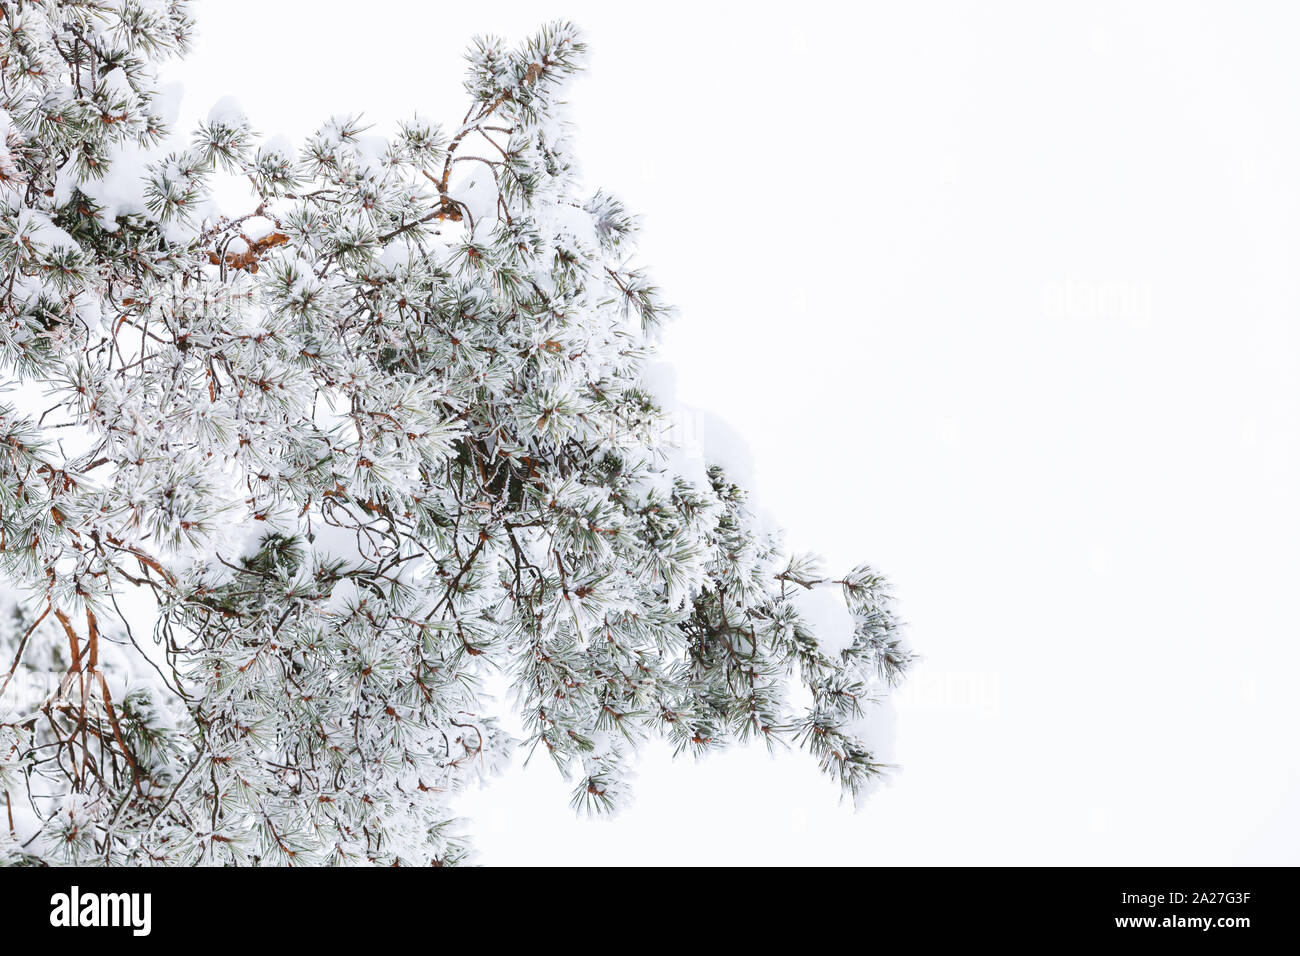 Pine Tree branches couvertes de givre et de neige sur fond blanc, photo en gros plan avec selective focus Banque D'Images